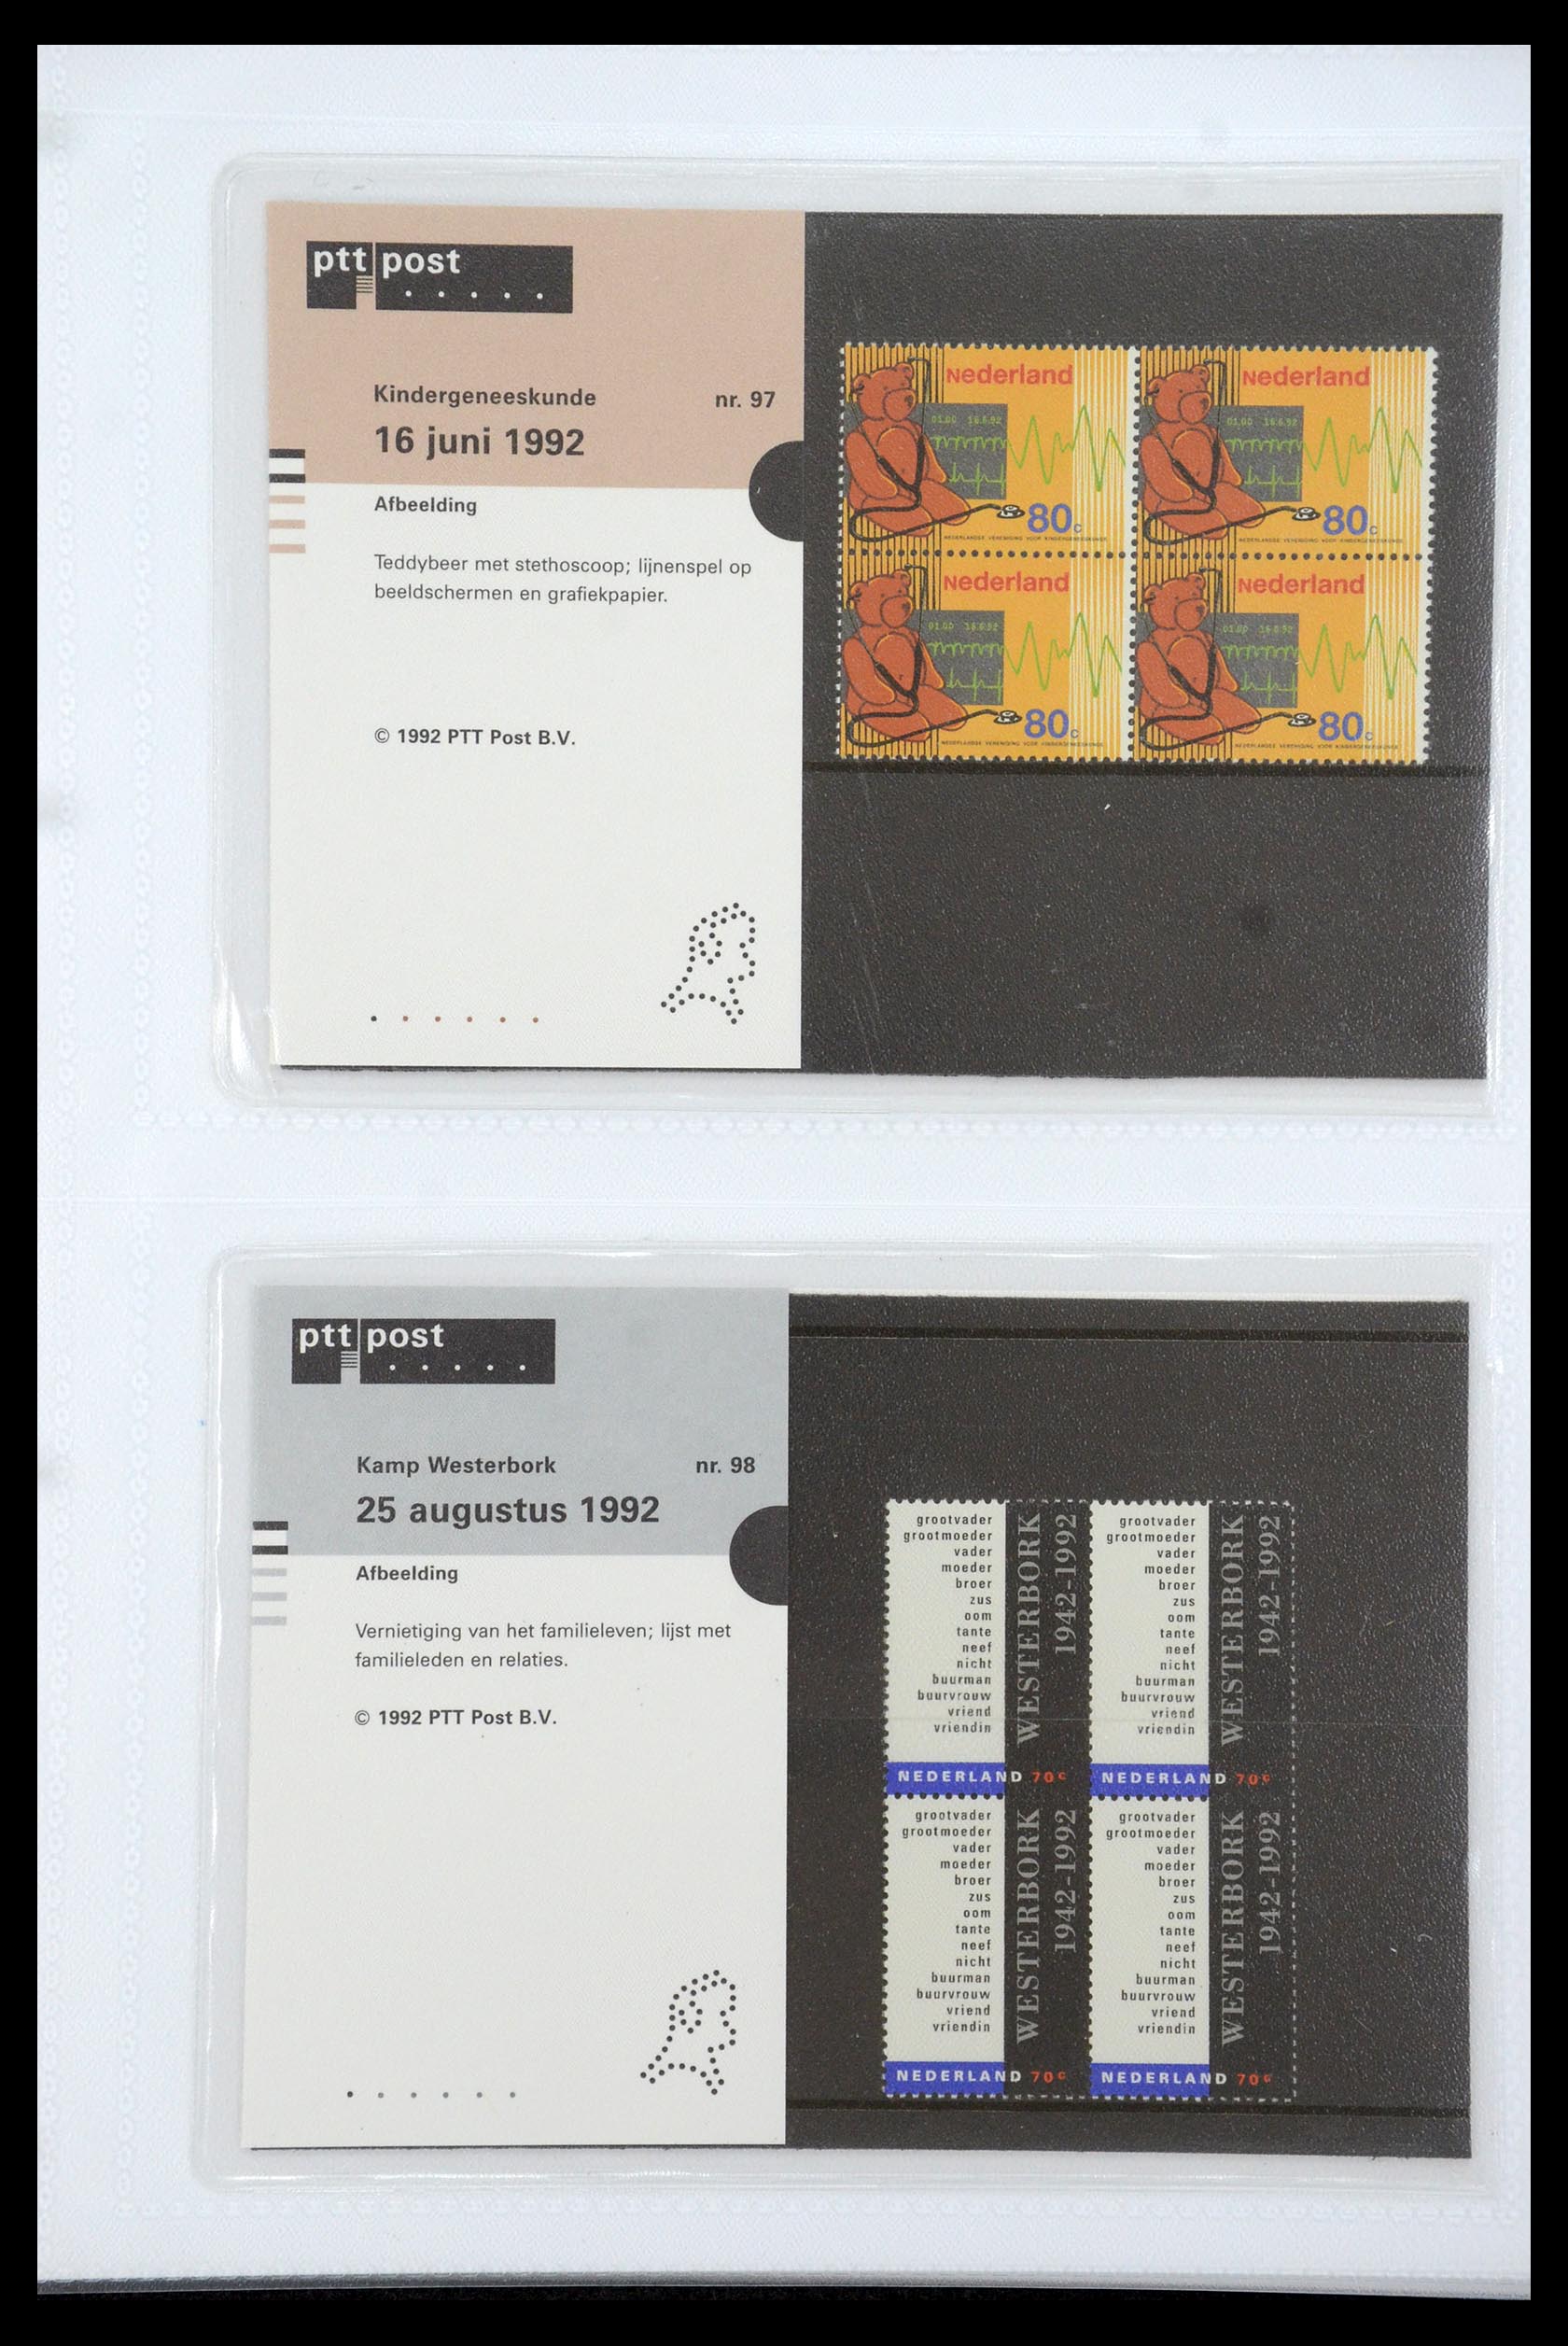 35947 050 - Stamp Collection 35947 Netherlands PTT presentation packs 1982-2019!